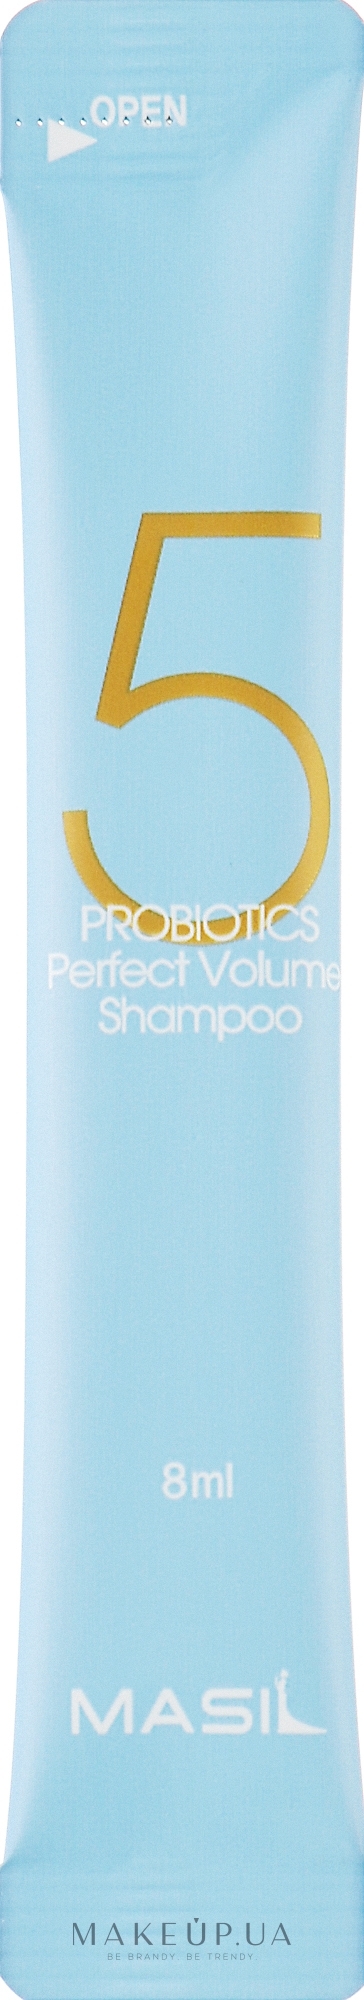 Шампунь з пробіотиками для ідеального об'єму волосся - Masil 5 Probiotics Perfect Volume Shampoo (пробник) — фото 8ml